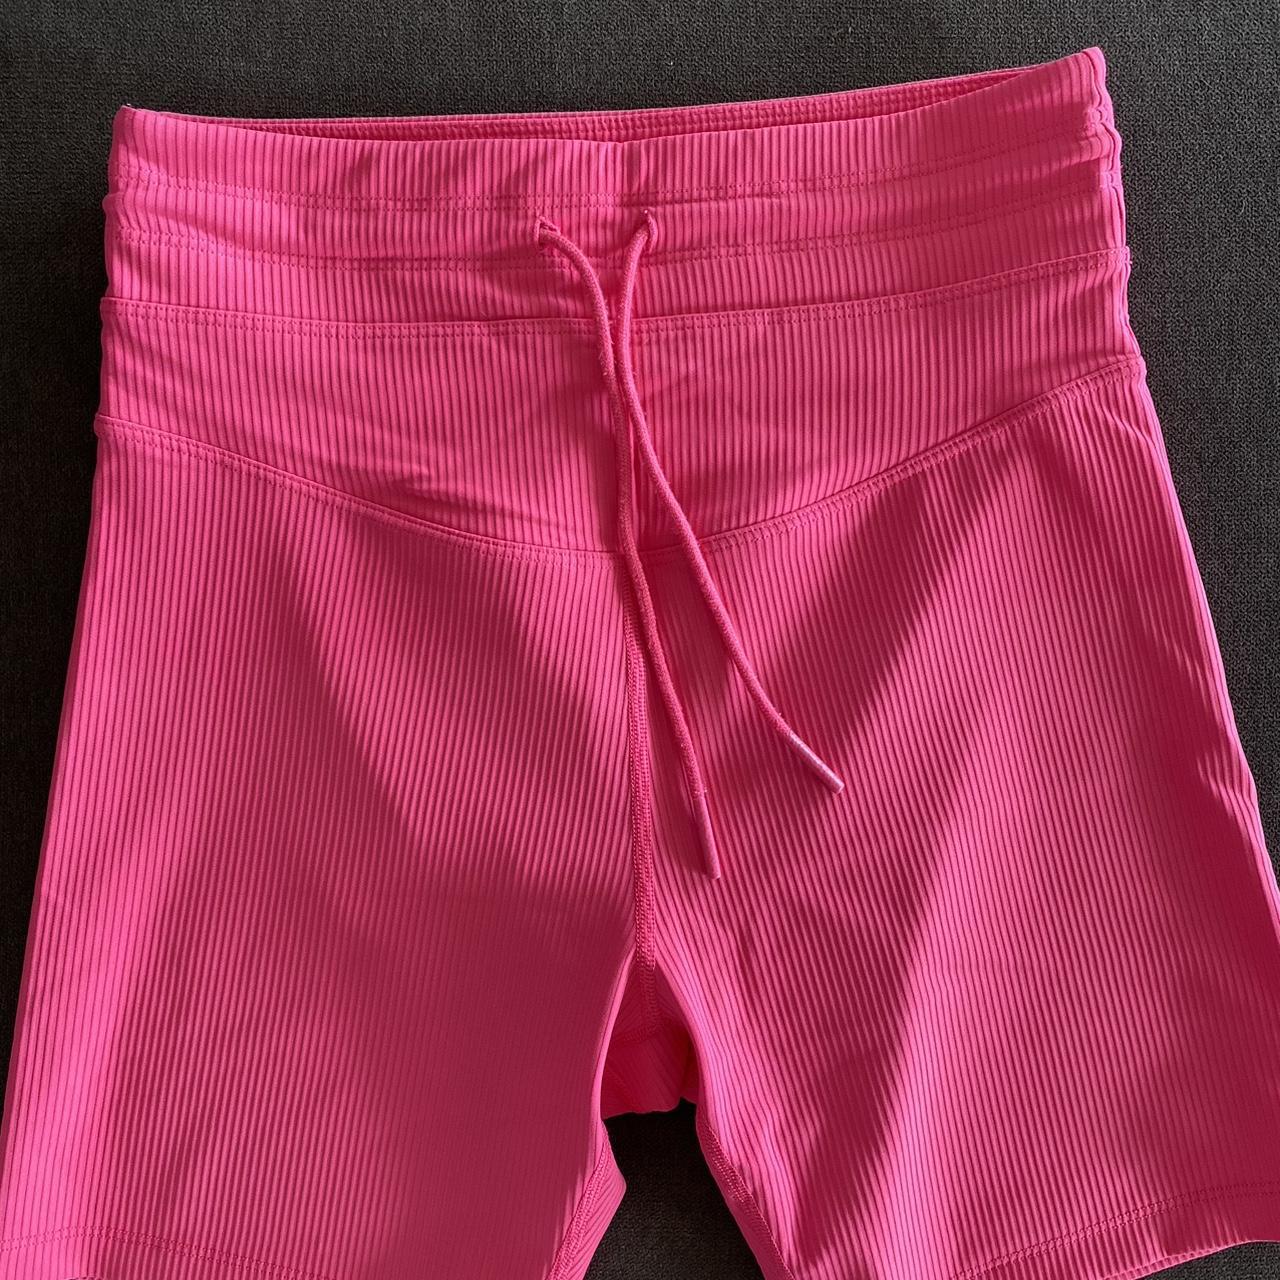 Lorna Jane bike shorts - pink #active #lornajane - Depop